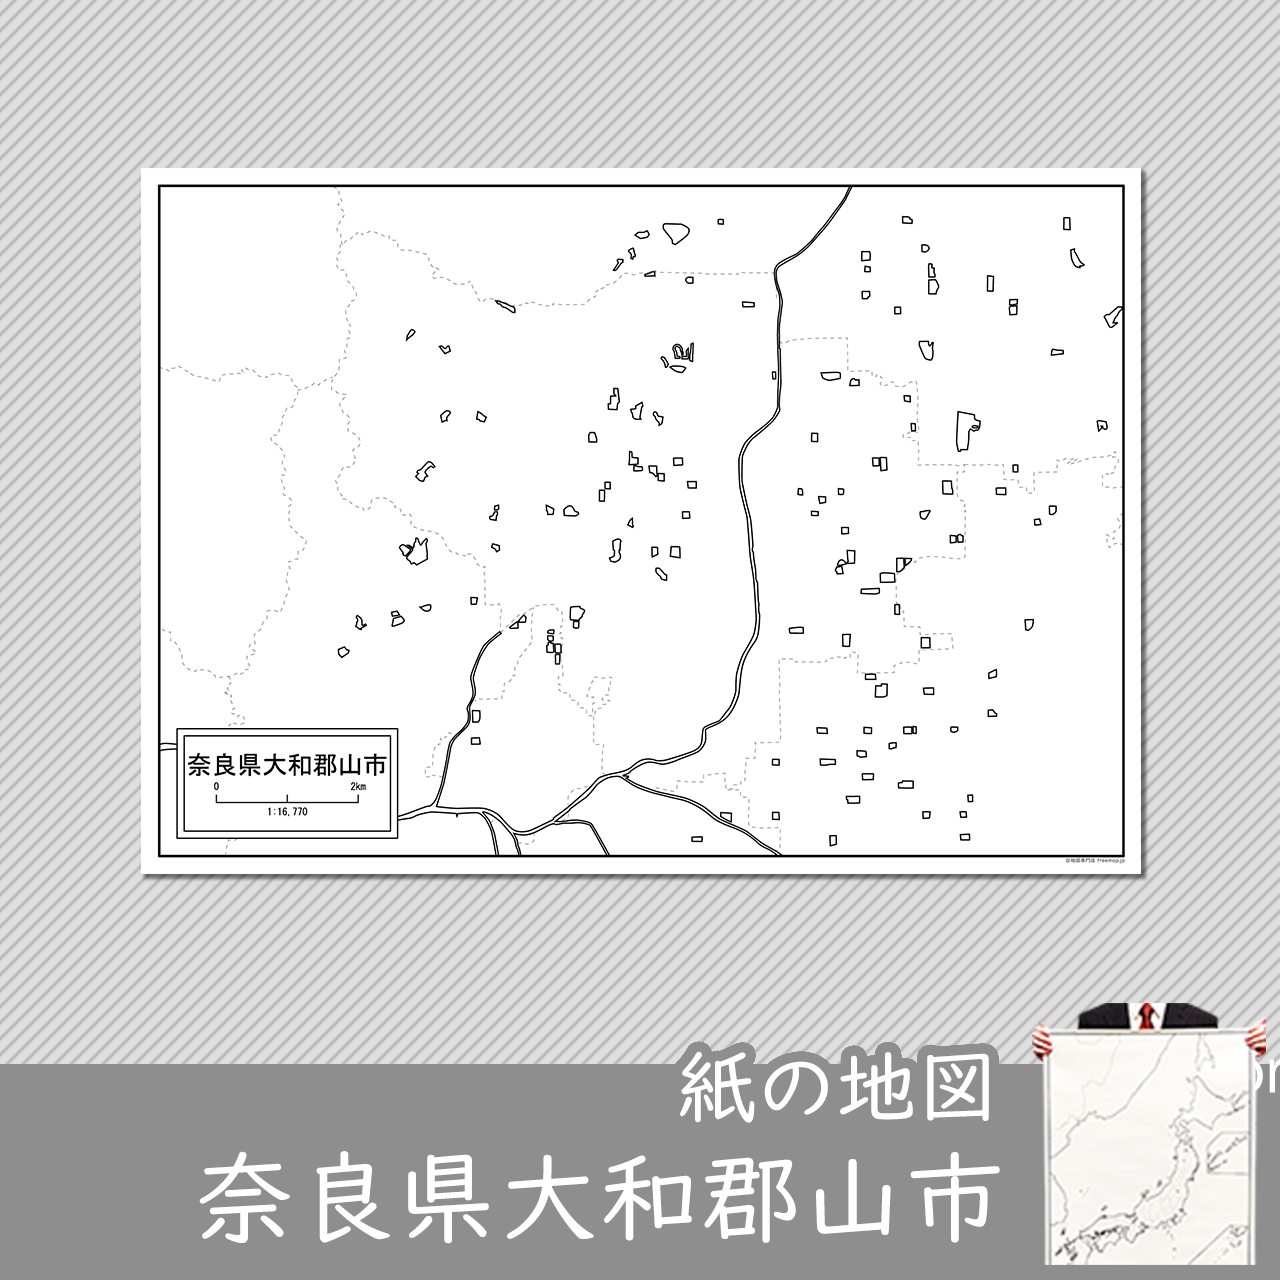 大和郡山市の紙の白地図のサムネイル